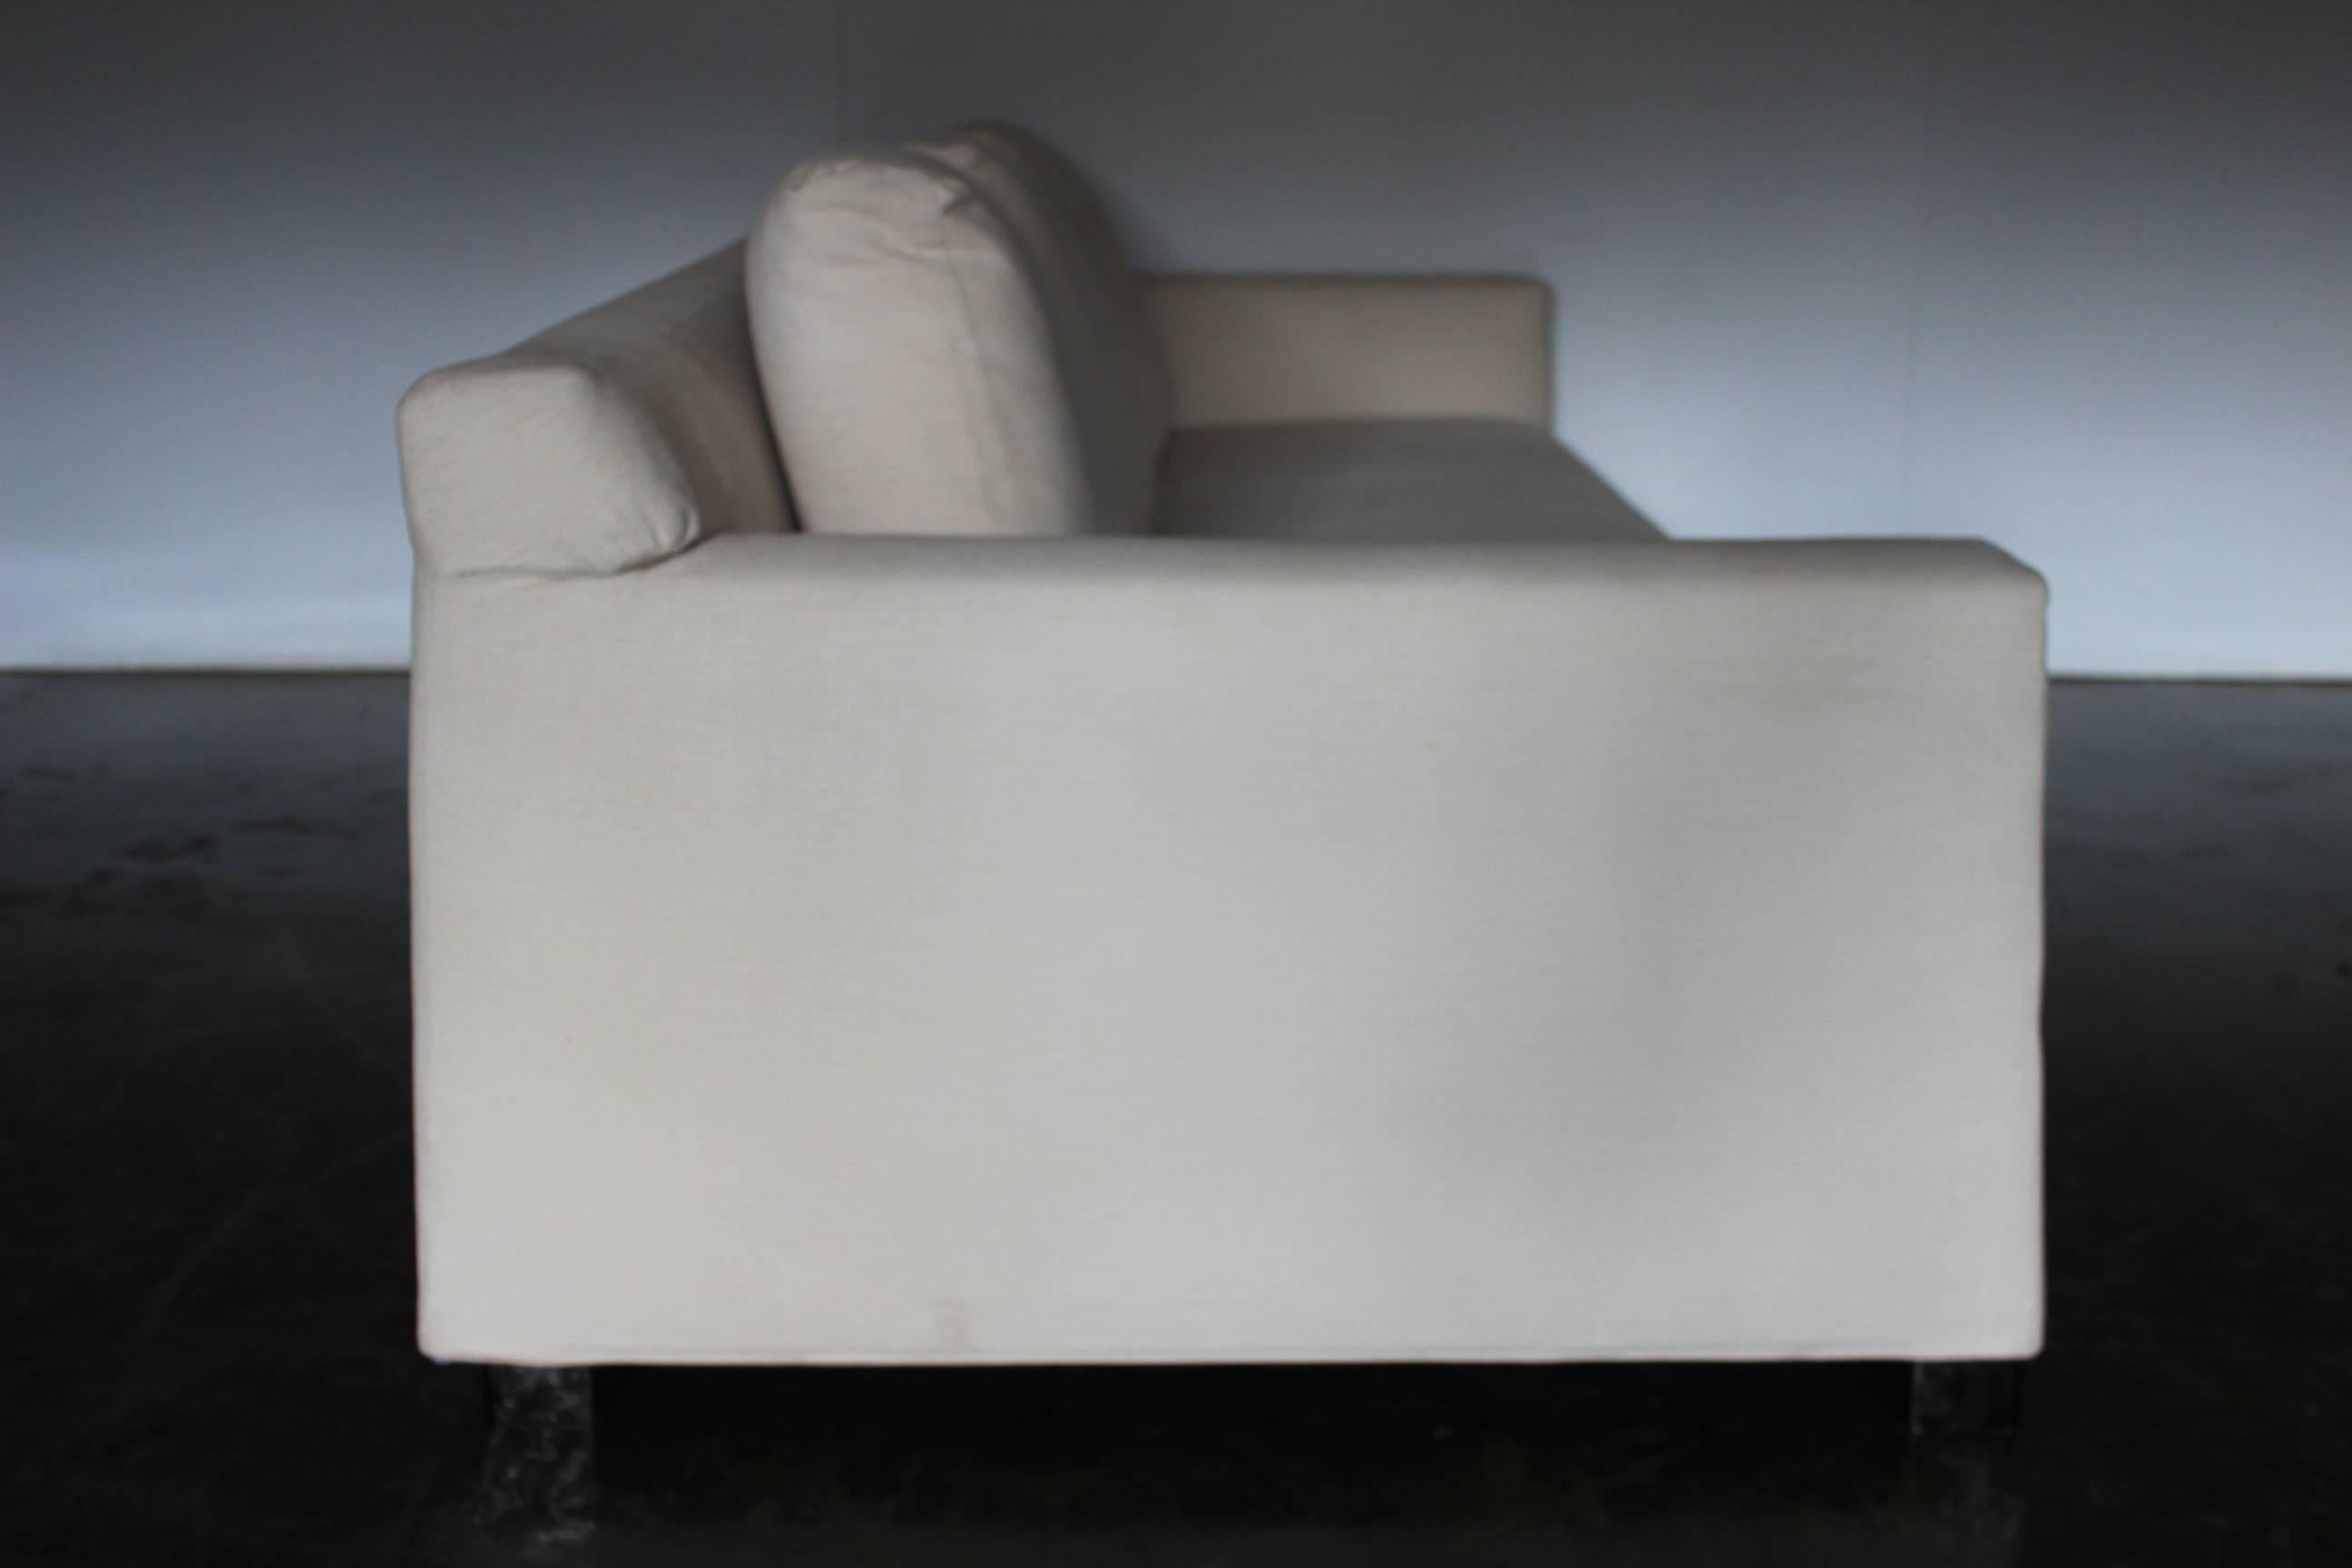 neutral sofa